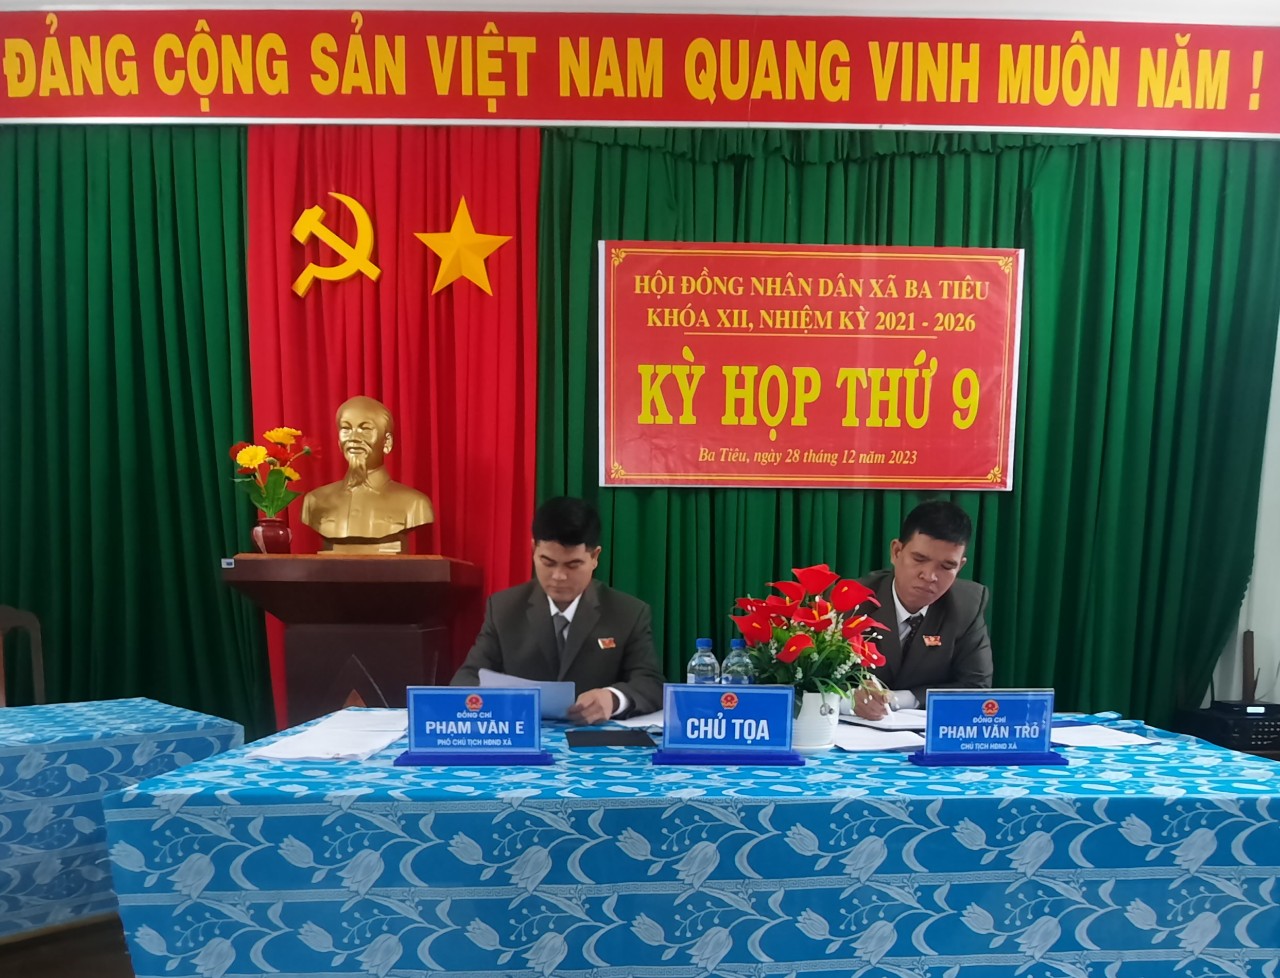 Hội đồng nhân dân xã Ba Tiêu tổ chức kỳ họp thứ 9, khoá XII (kỳ họp cuối năm 2023) nhiệm kỳ 2021-2026